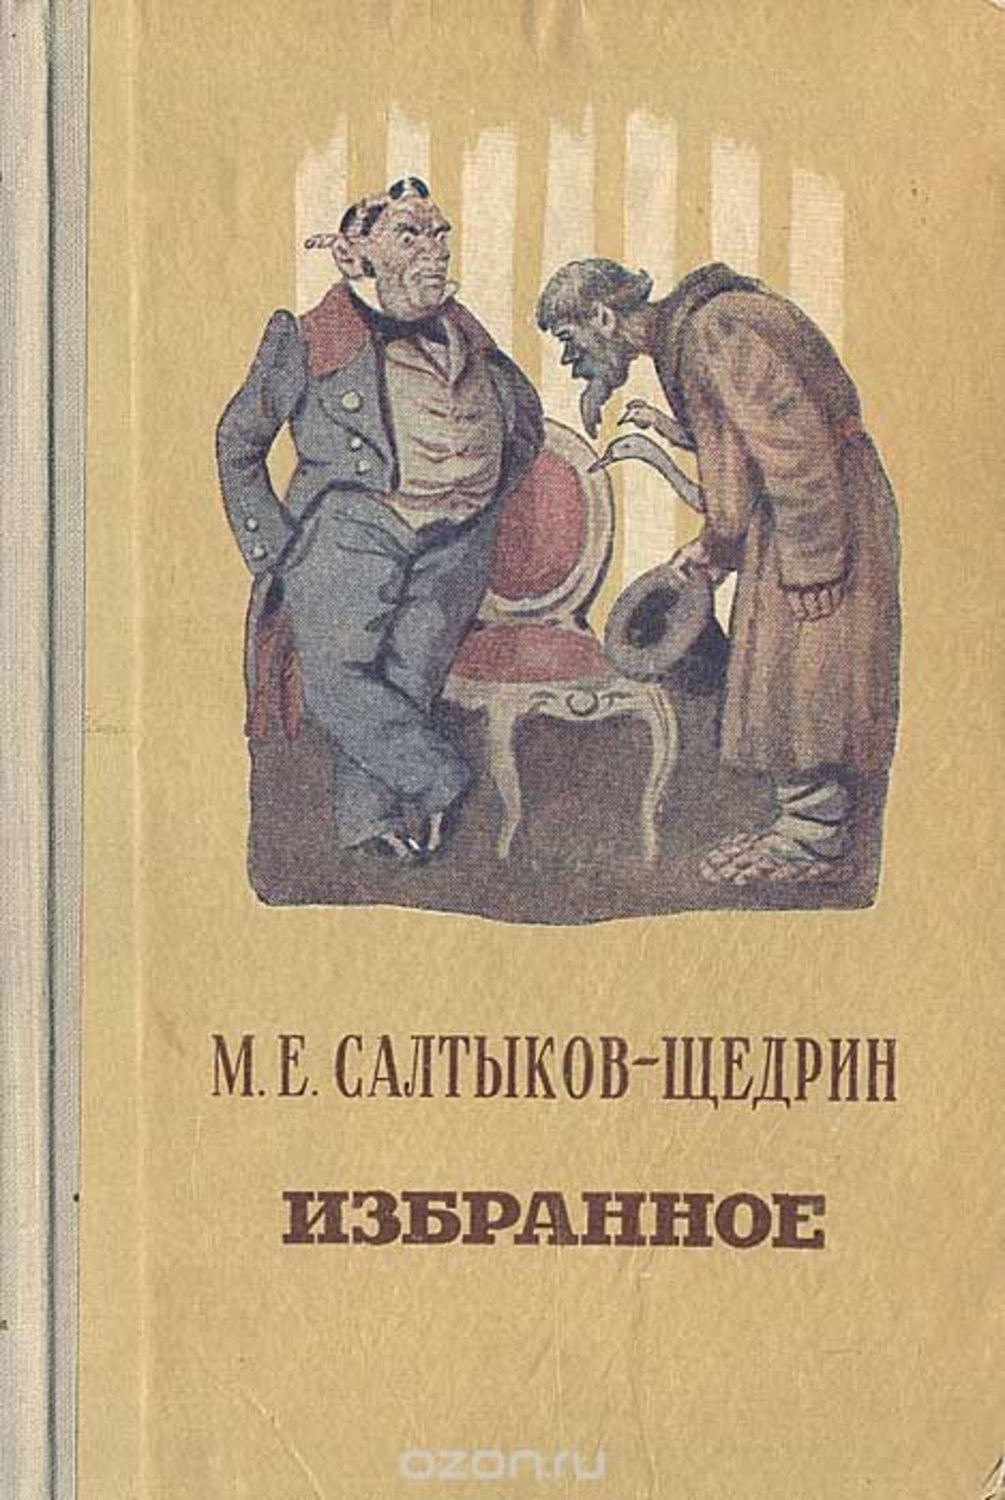 М.Е.Салтыков-Щедрин книги